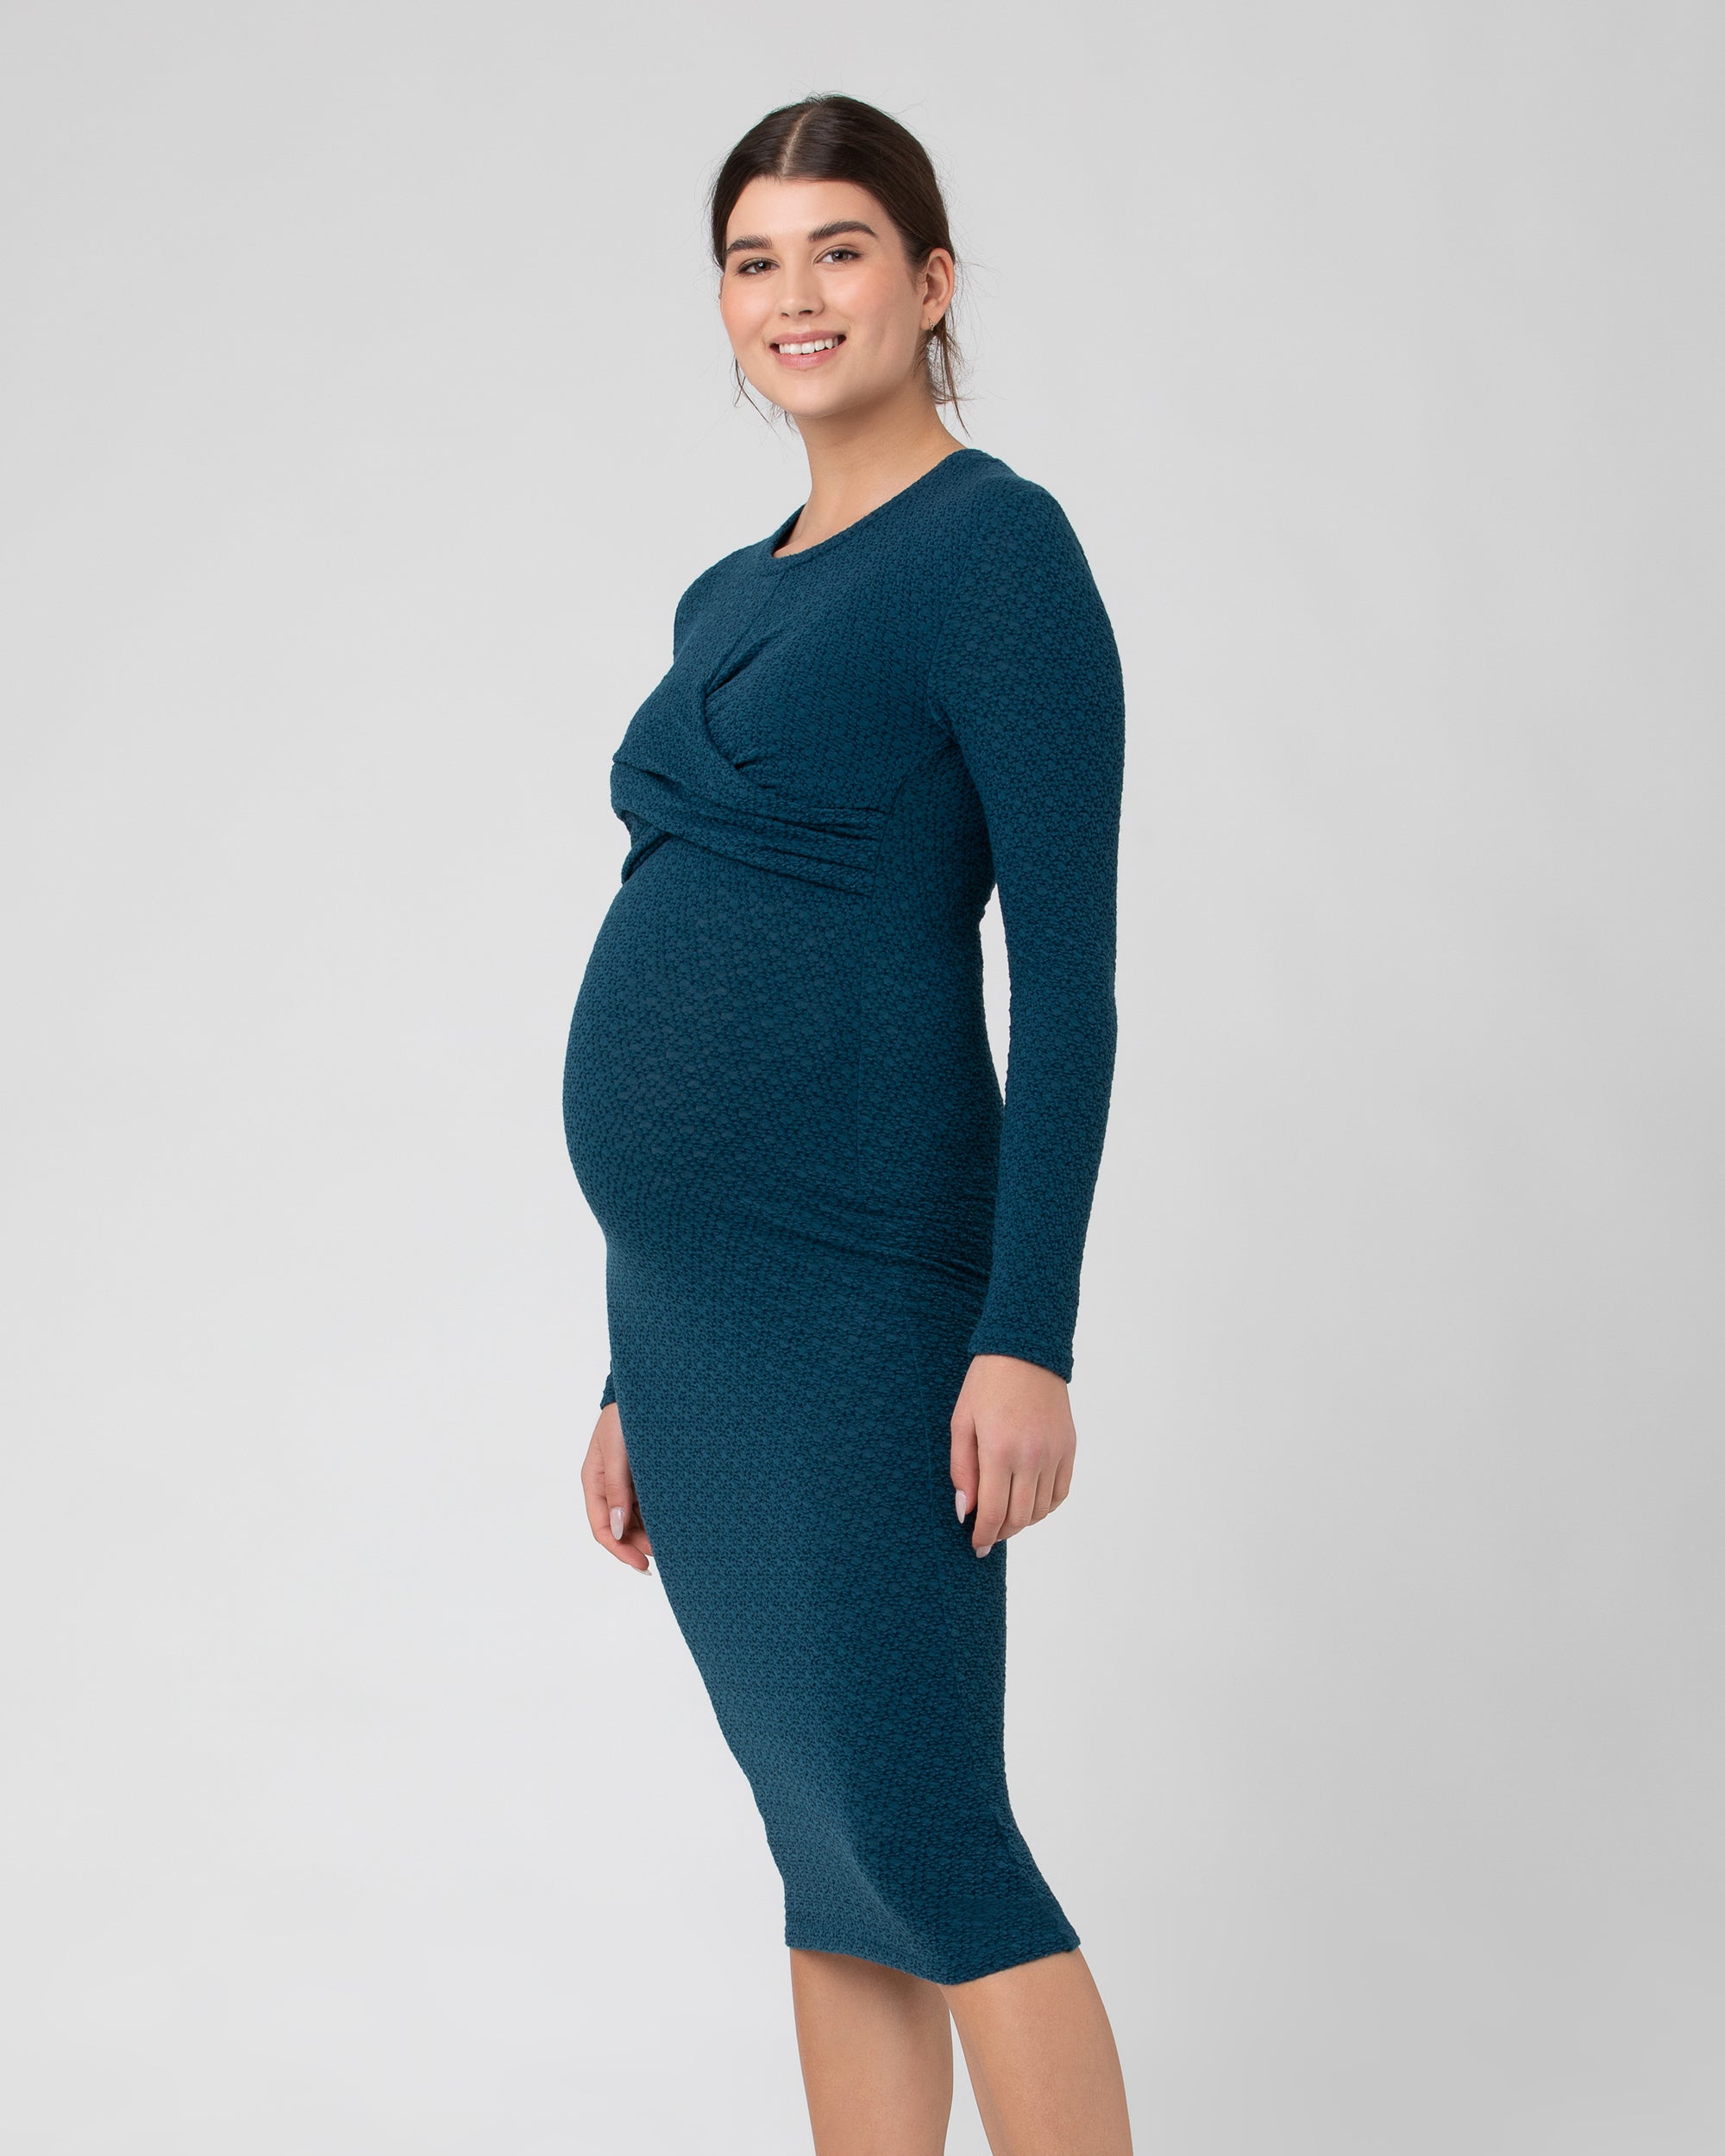 Midi Navy & White Stripe Maternity to Nursing Smock T-Shirt Dress